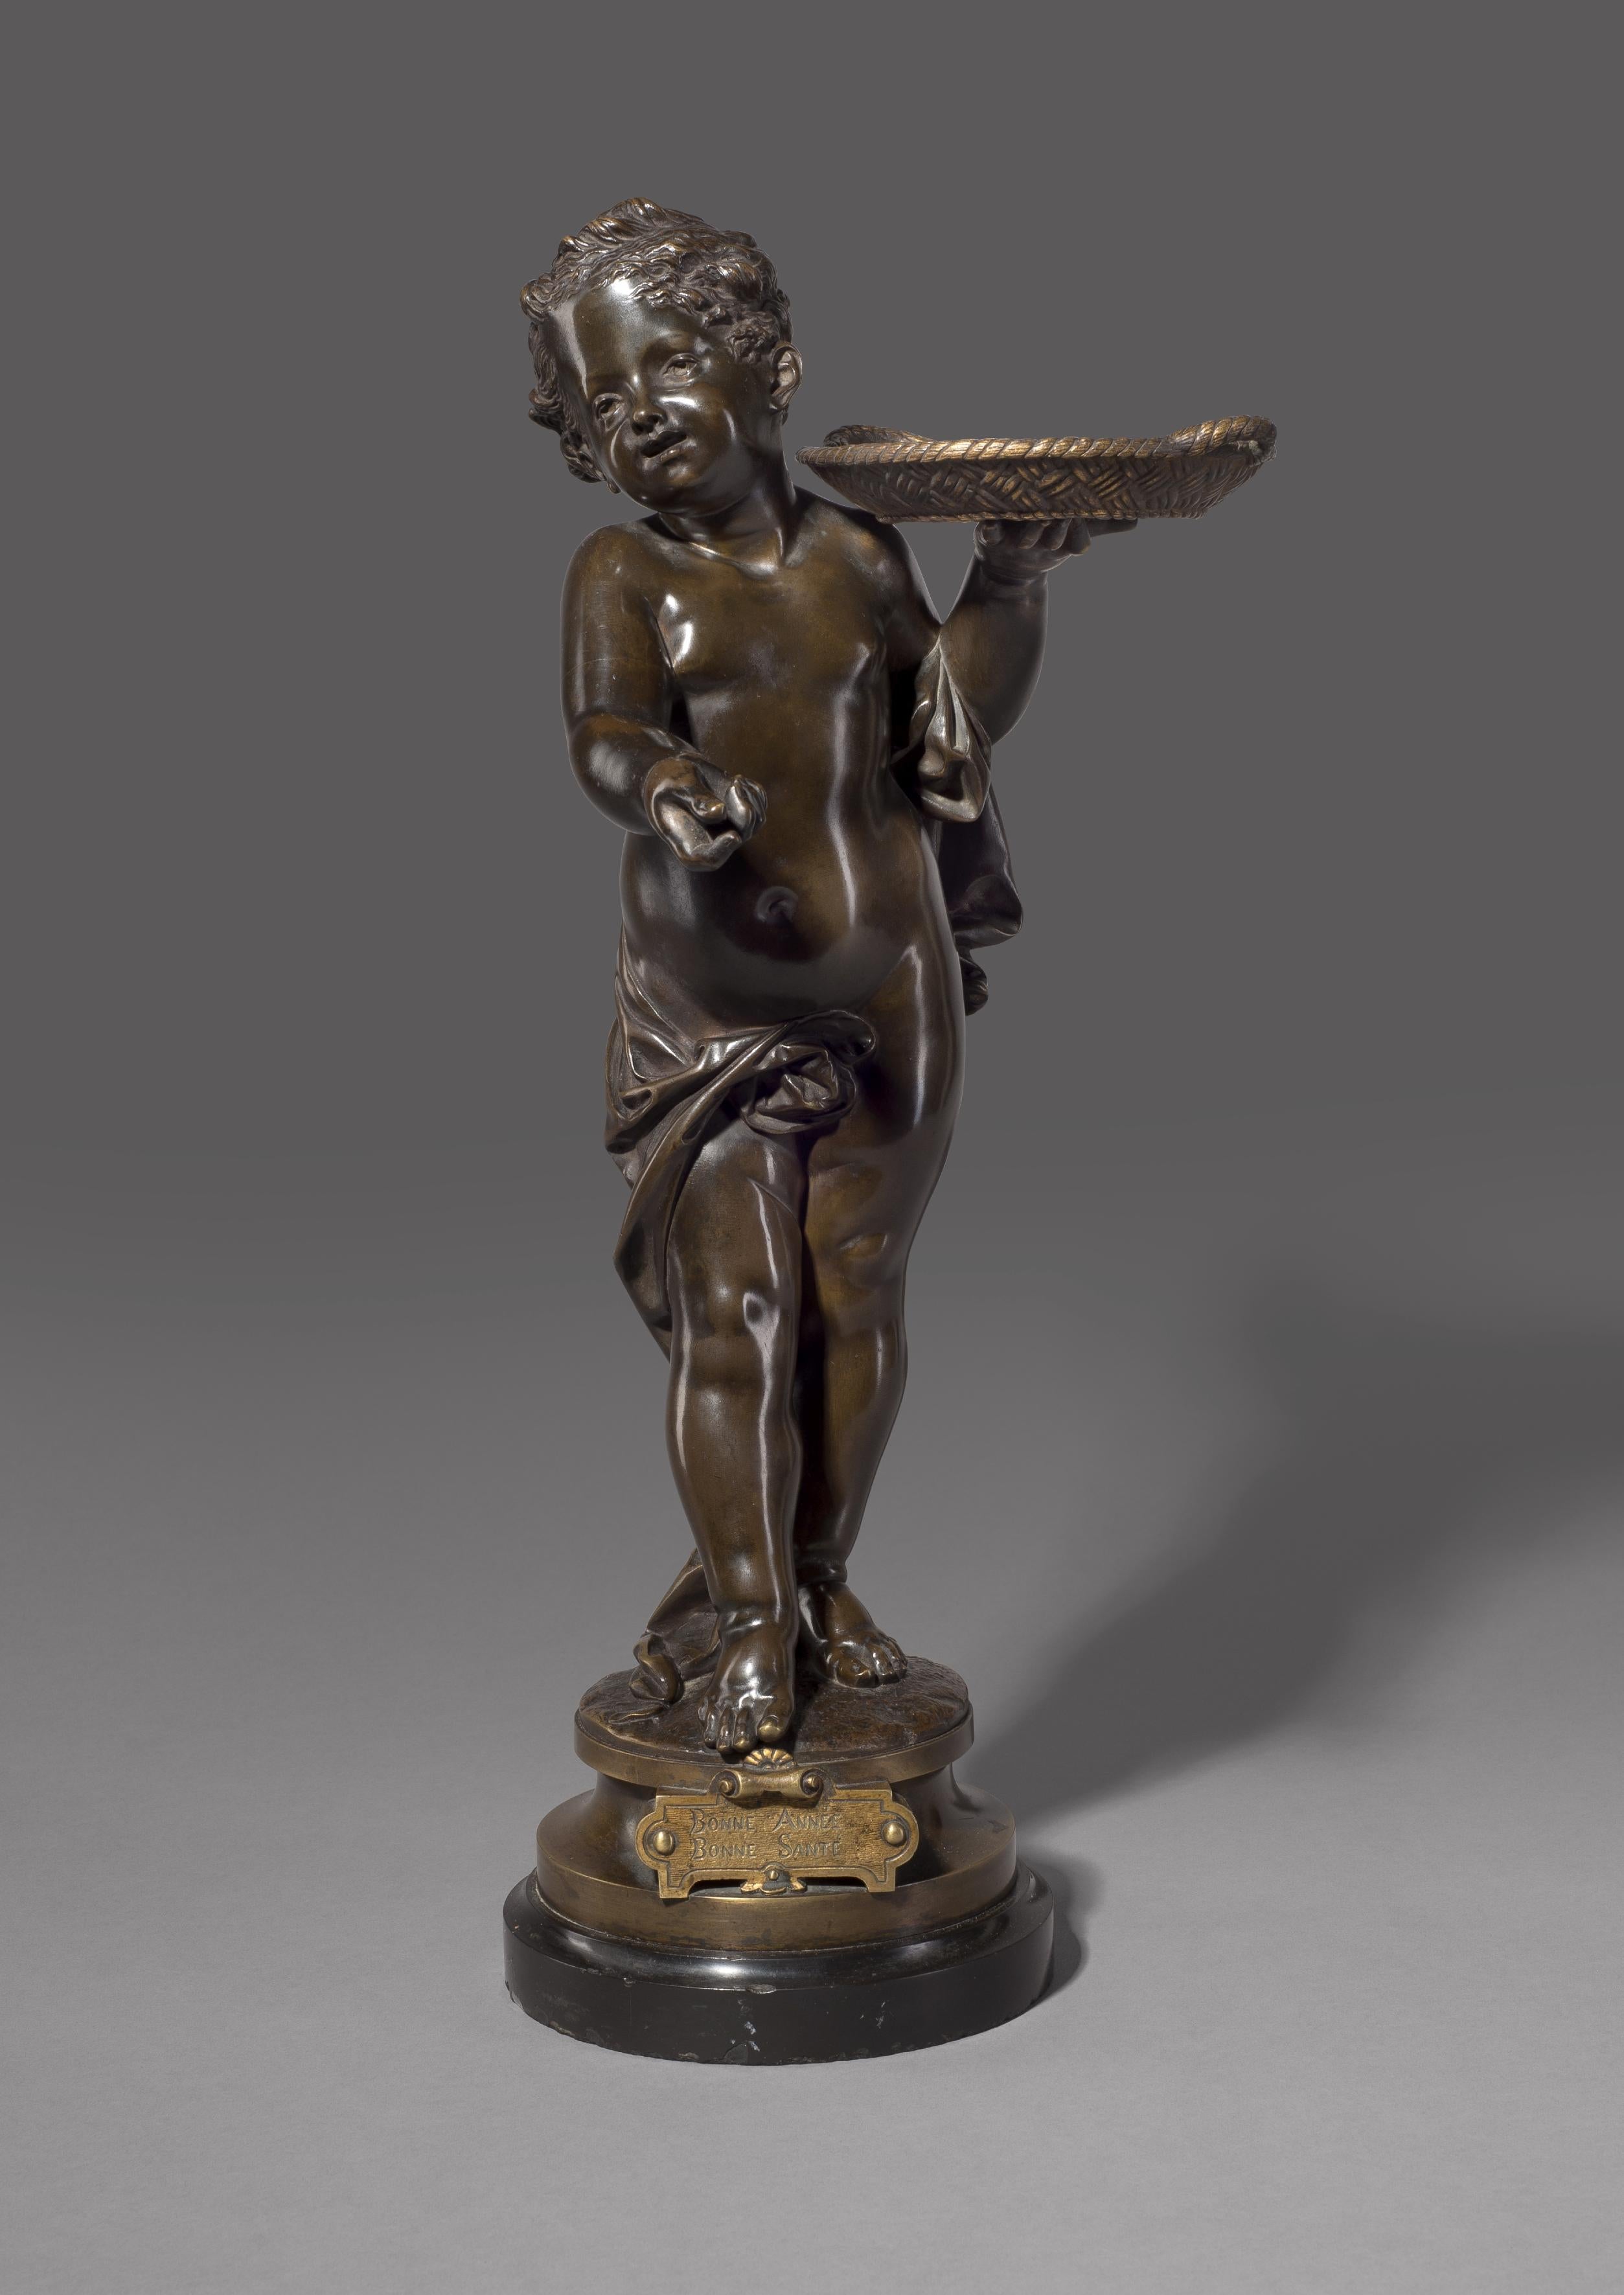 bonne Année, Bonne Santé' - Une belle figurine en bronze patiné d'Adolphe Maubach.

Français, vers 1900. 

Signé 